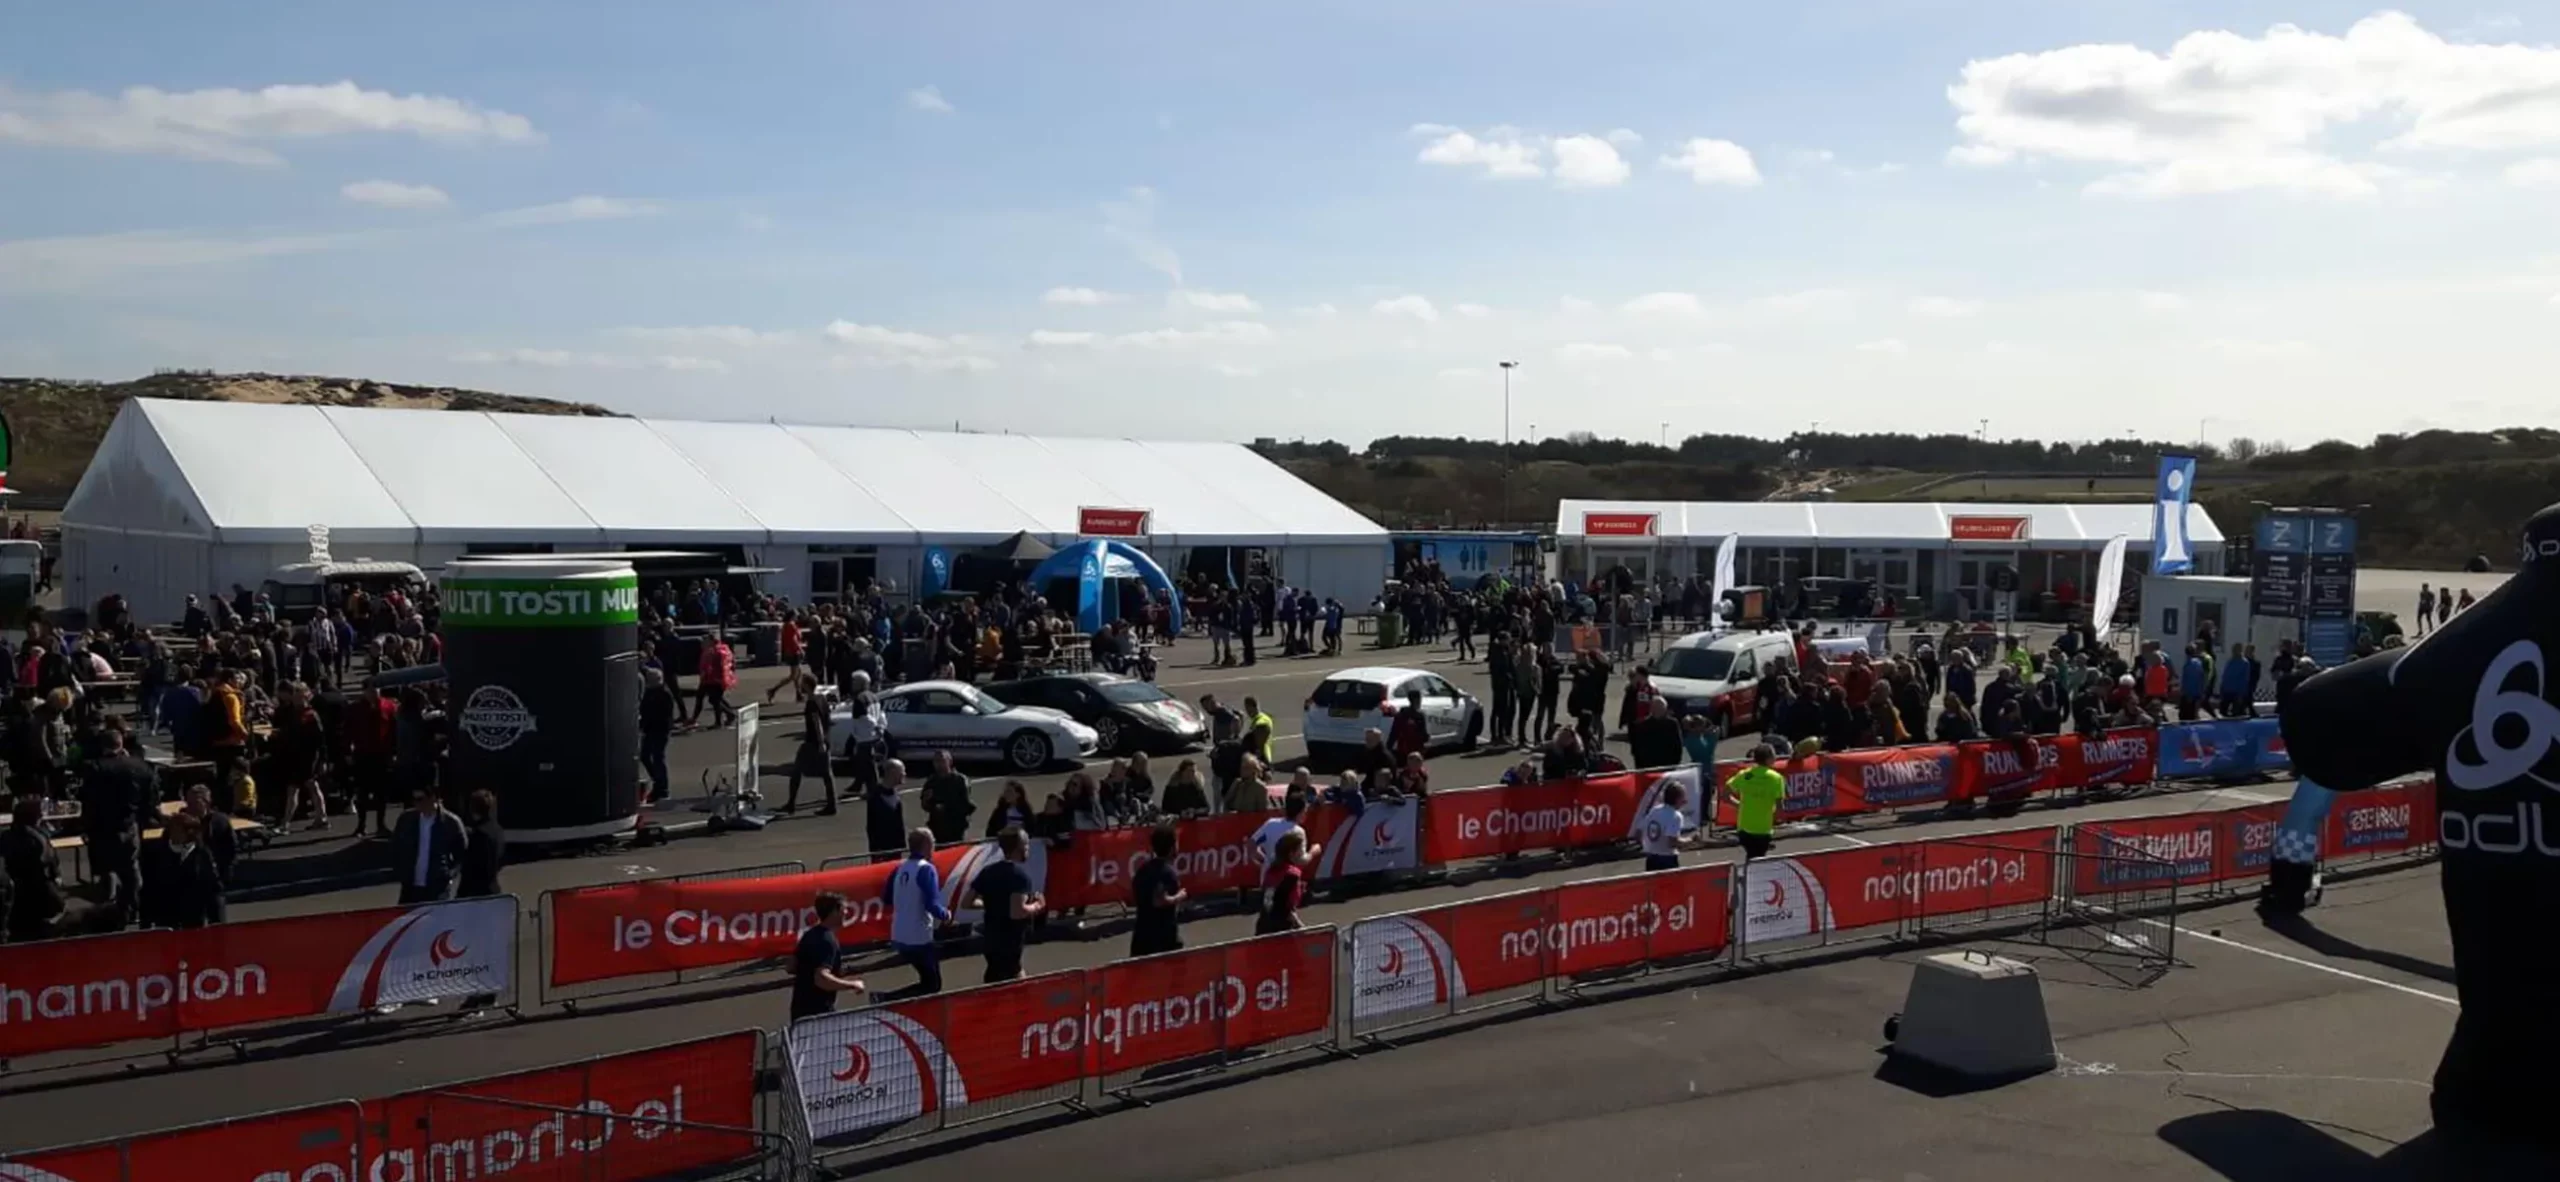 Motorsportevent auf Rennstrecke mit Zelthalle Alu Pavillon - Sportevent mit Zelthalle für das Fahrerlager